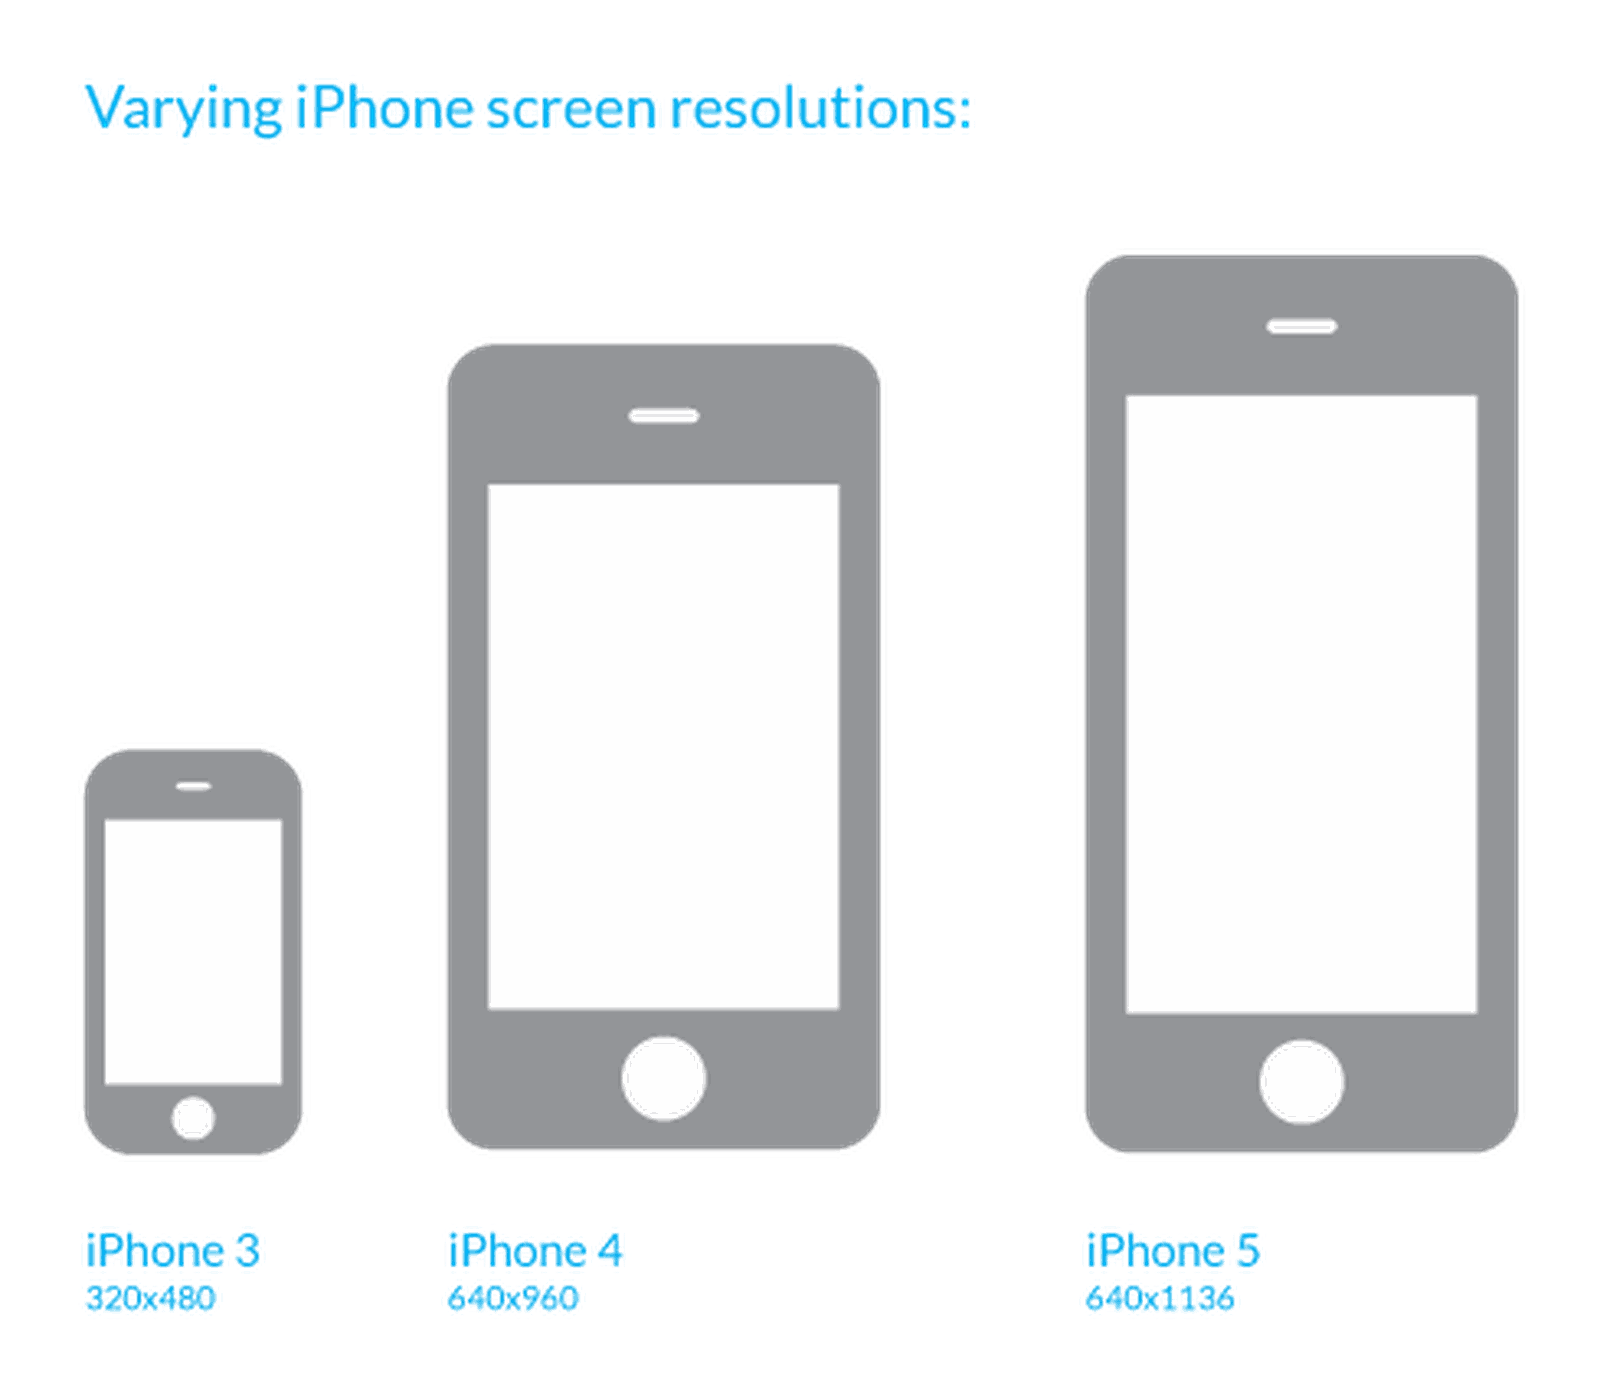 iphone 5 transparent screen